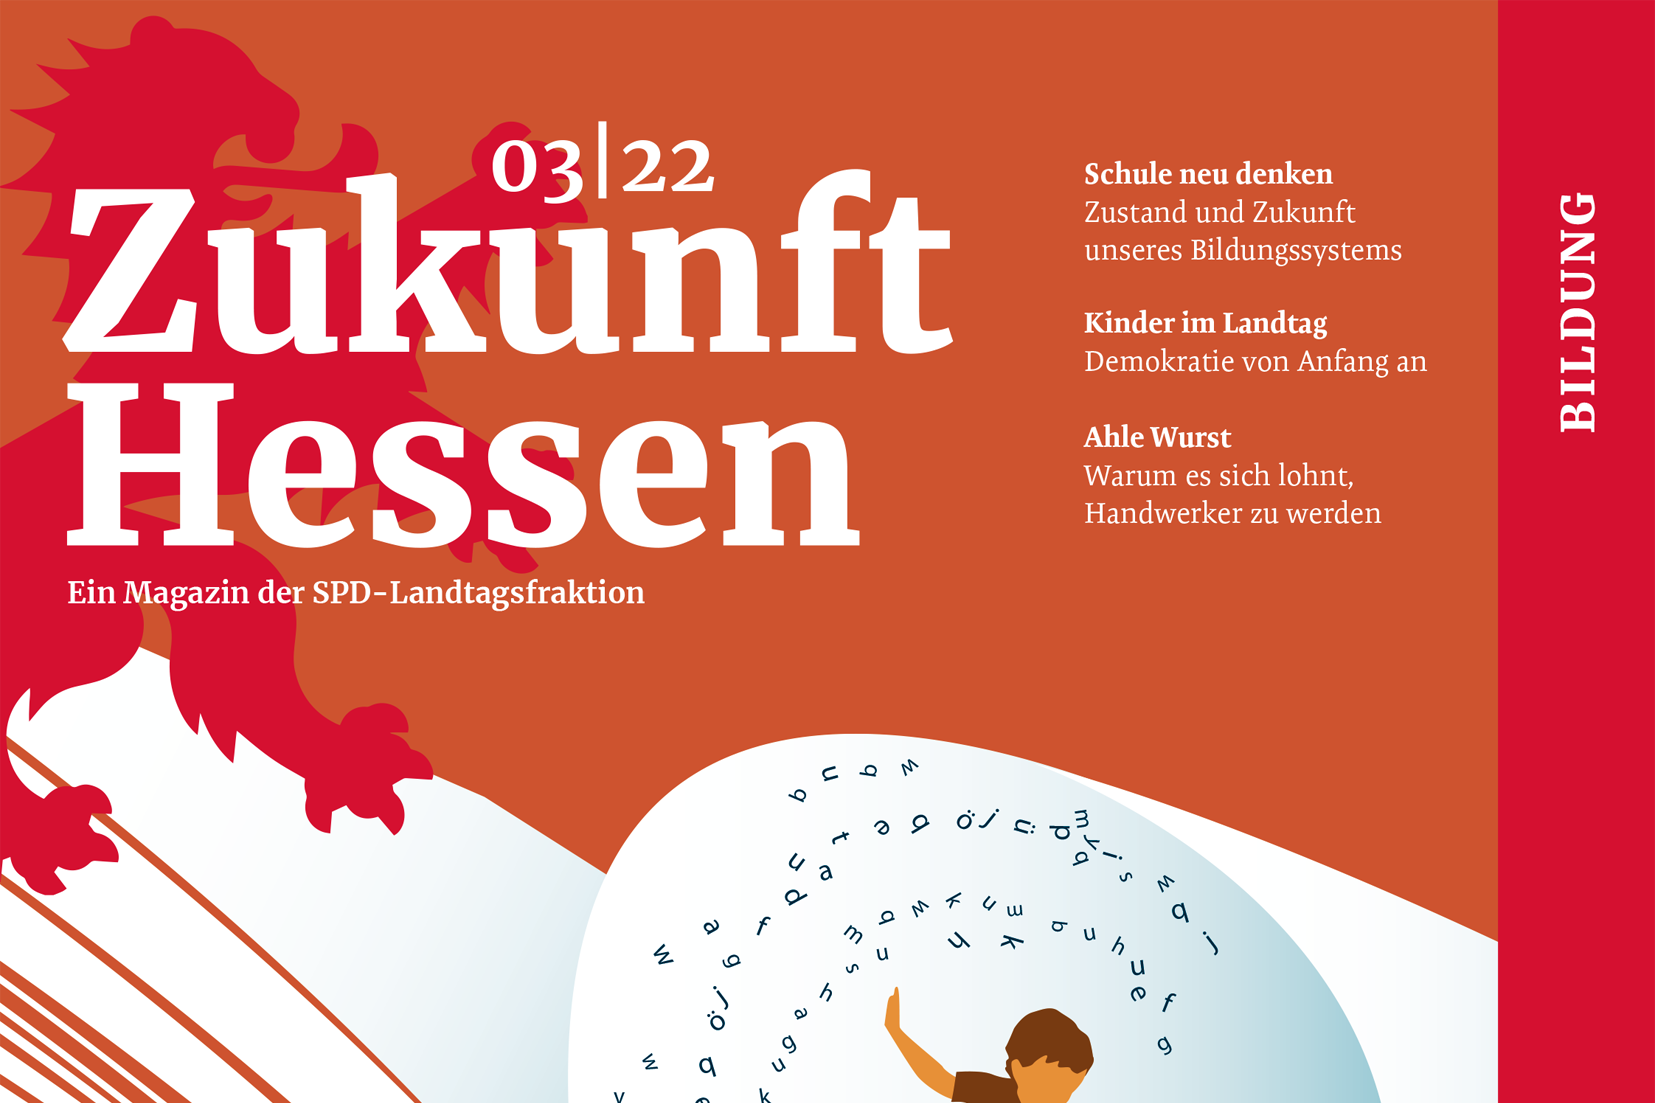 Ausschnitt des Covers des Magazins ZUKUNFT HESSEN